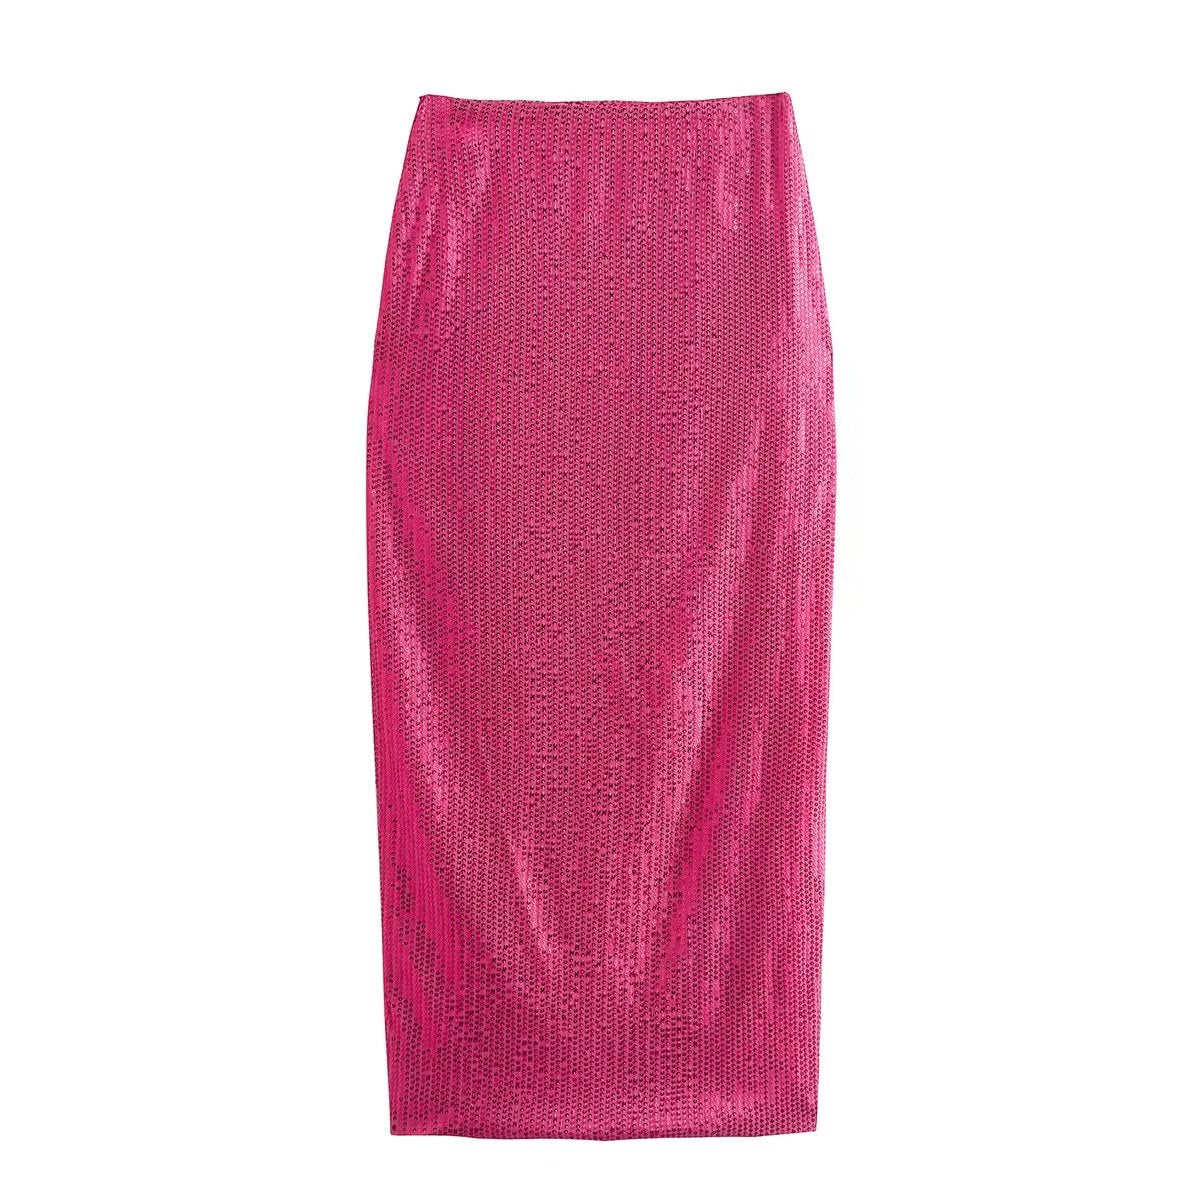 Rose Sequin Top Skirt Suit